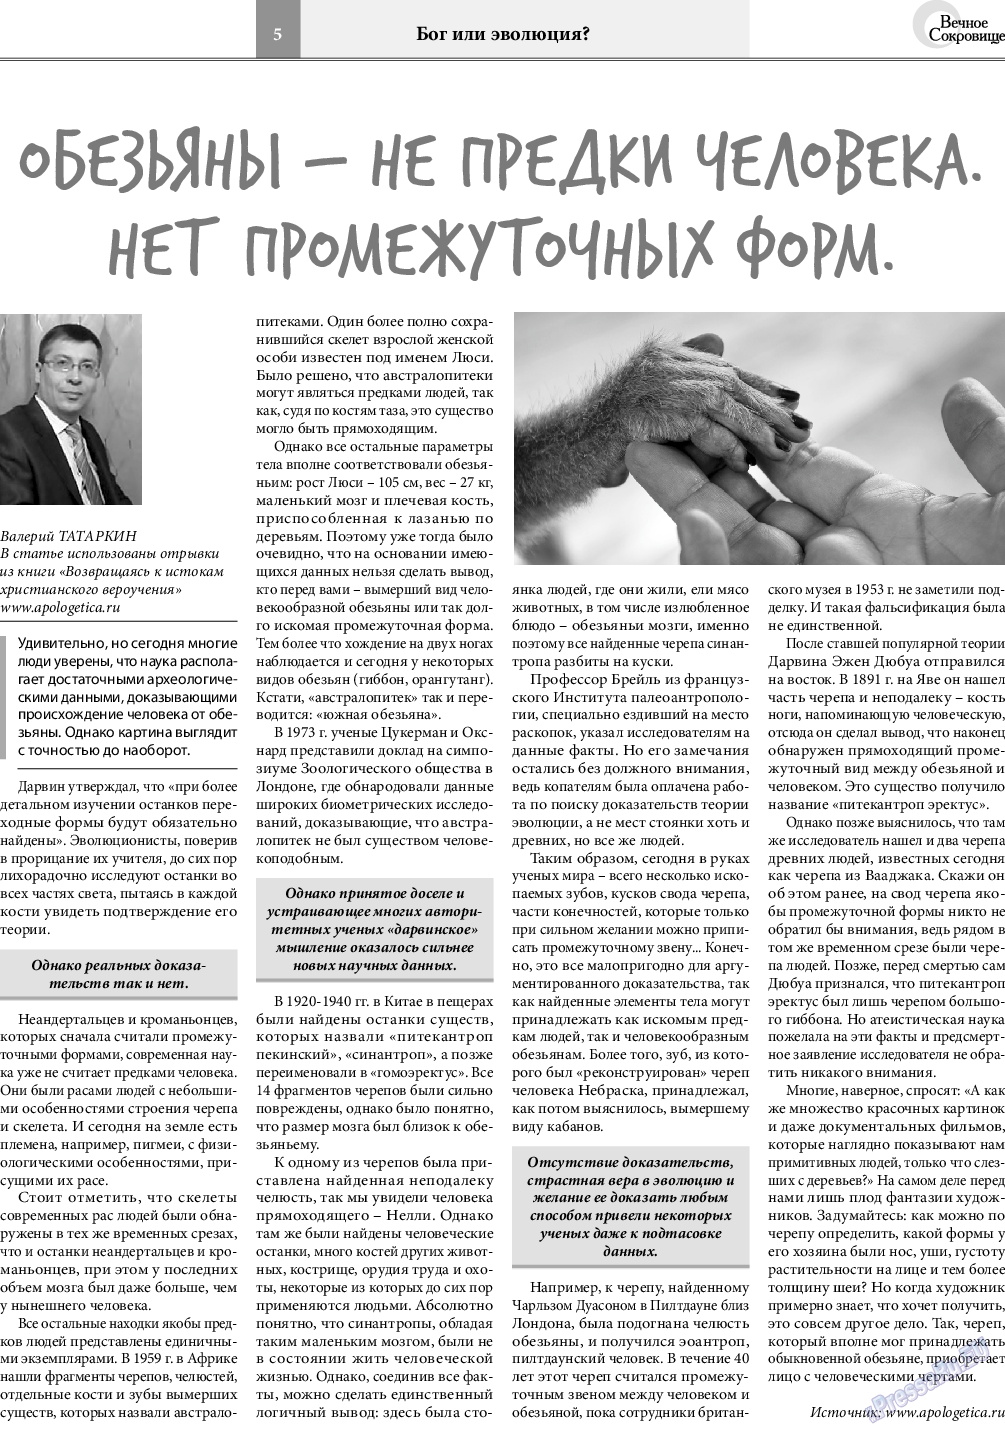 Вечное сокровище, газета. 2018 №4 стр.5